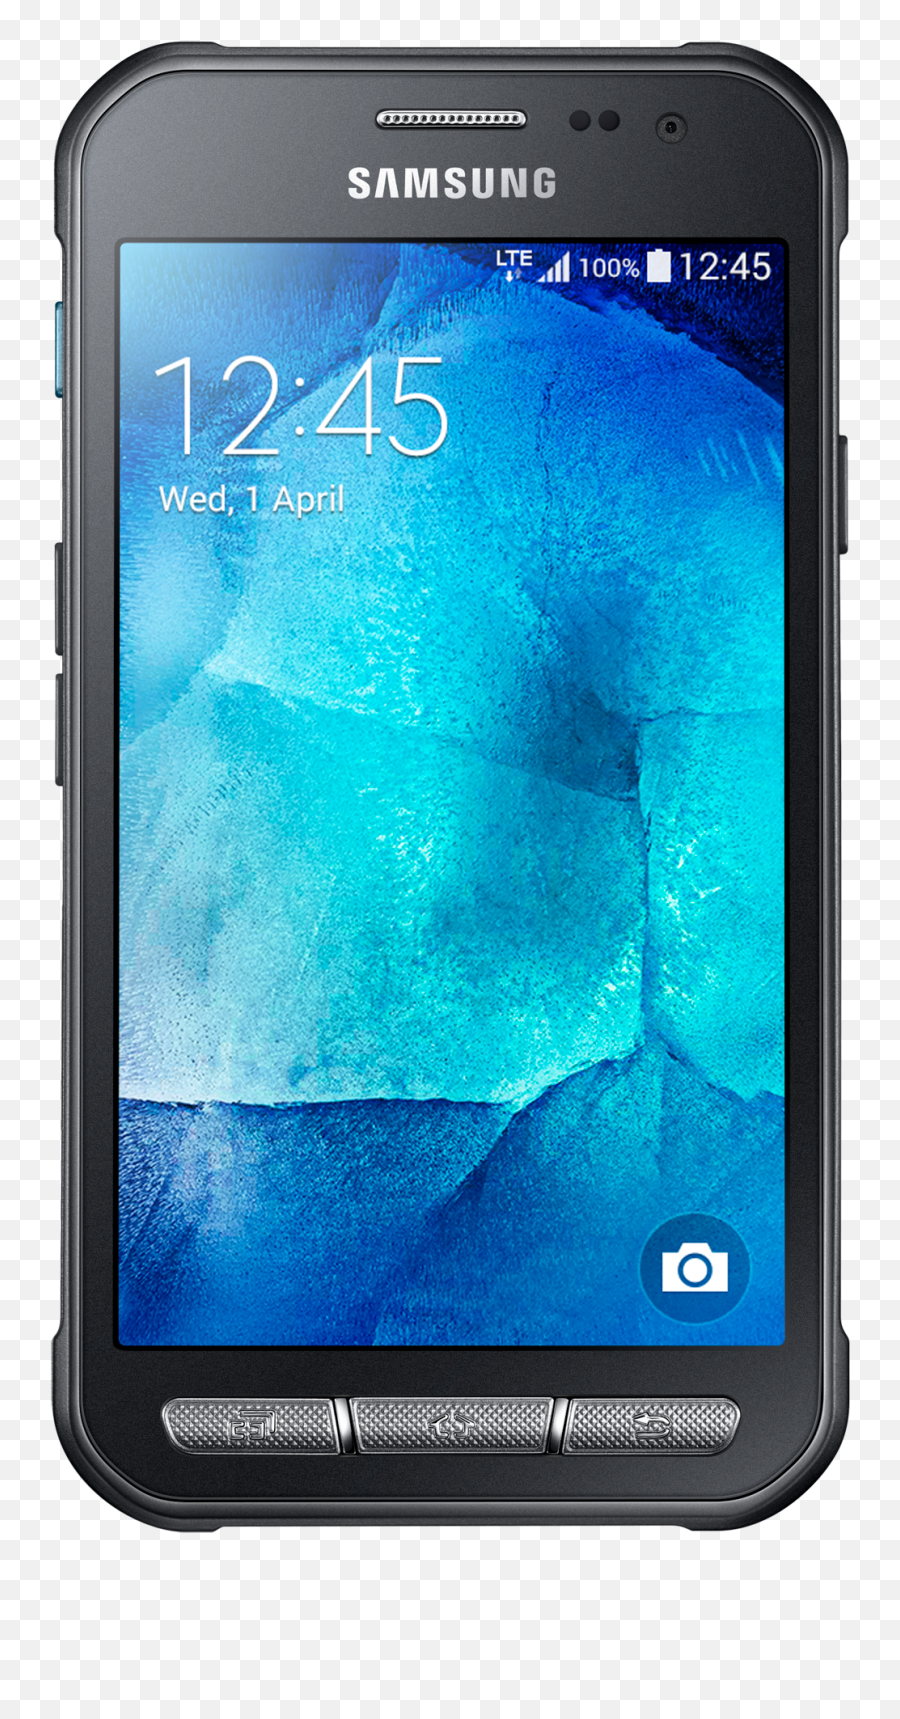 Galaxy Xcover 3 Samsung Support Ie - Samsung Galaxy Xcover3 Sm G388f Emoji,Wwe Emoji Free